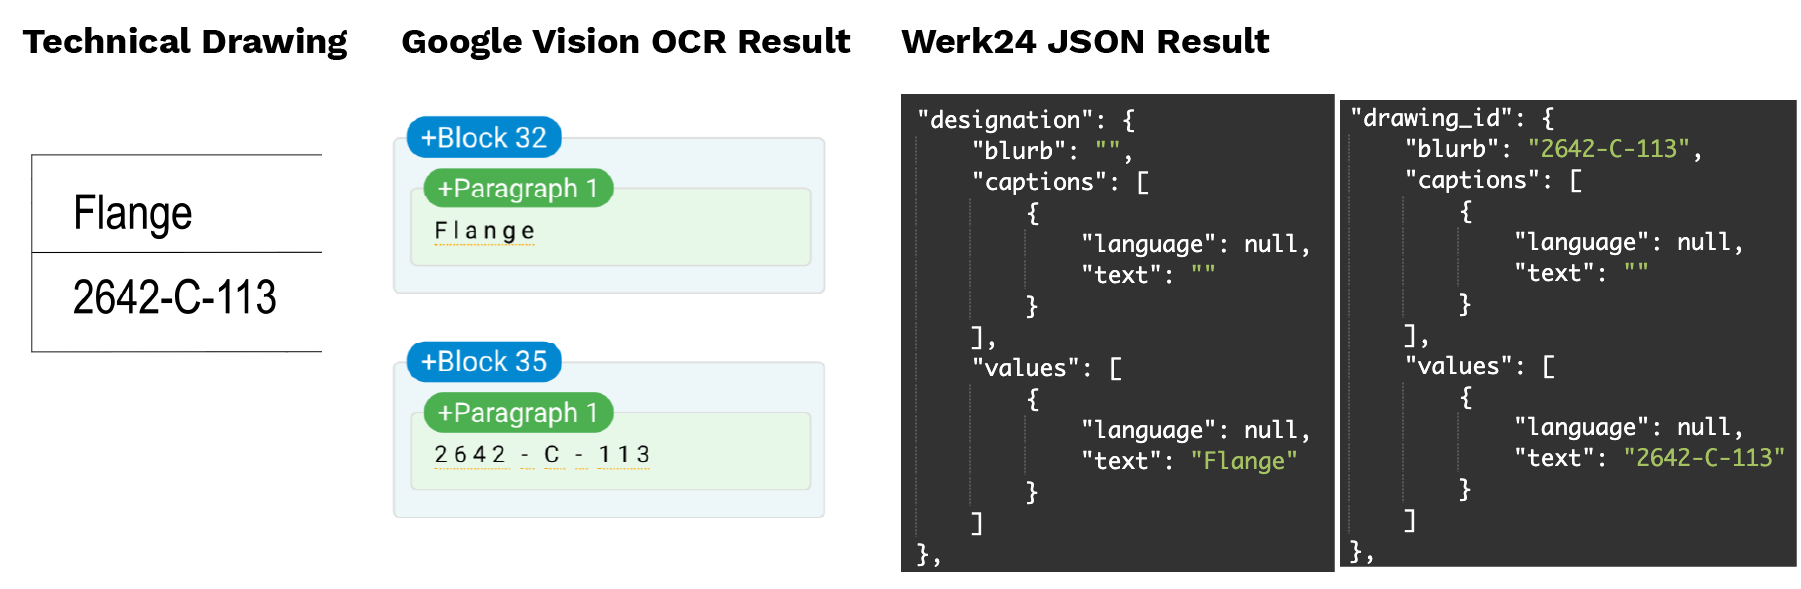 Comparación de los bloques de dibujos técnicos entre Google Vision OCR y Werk24 JSON